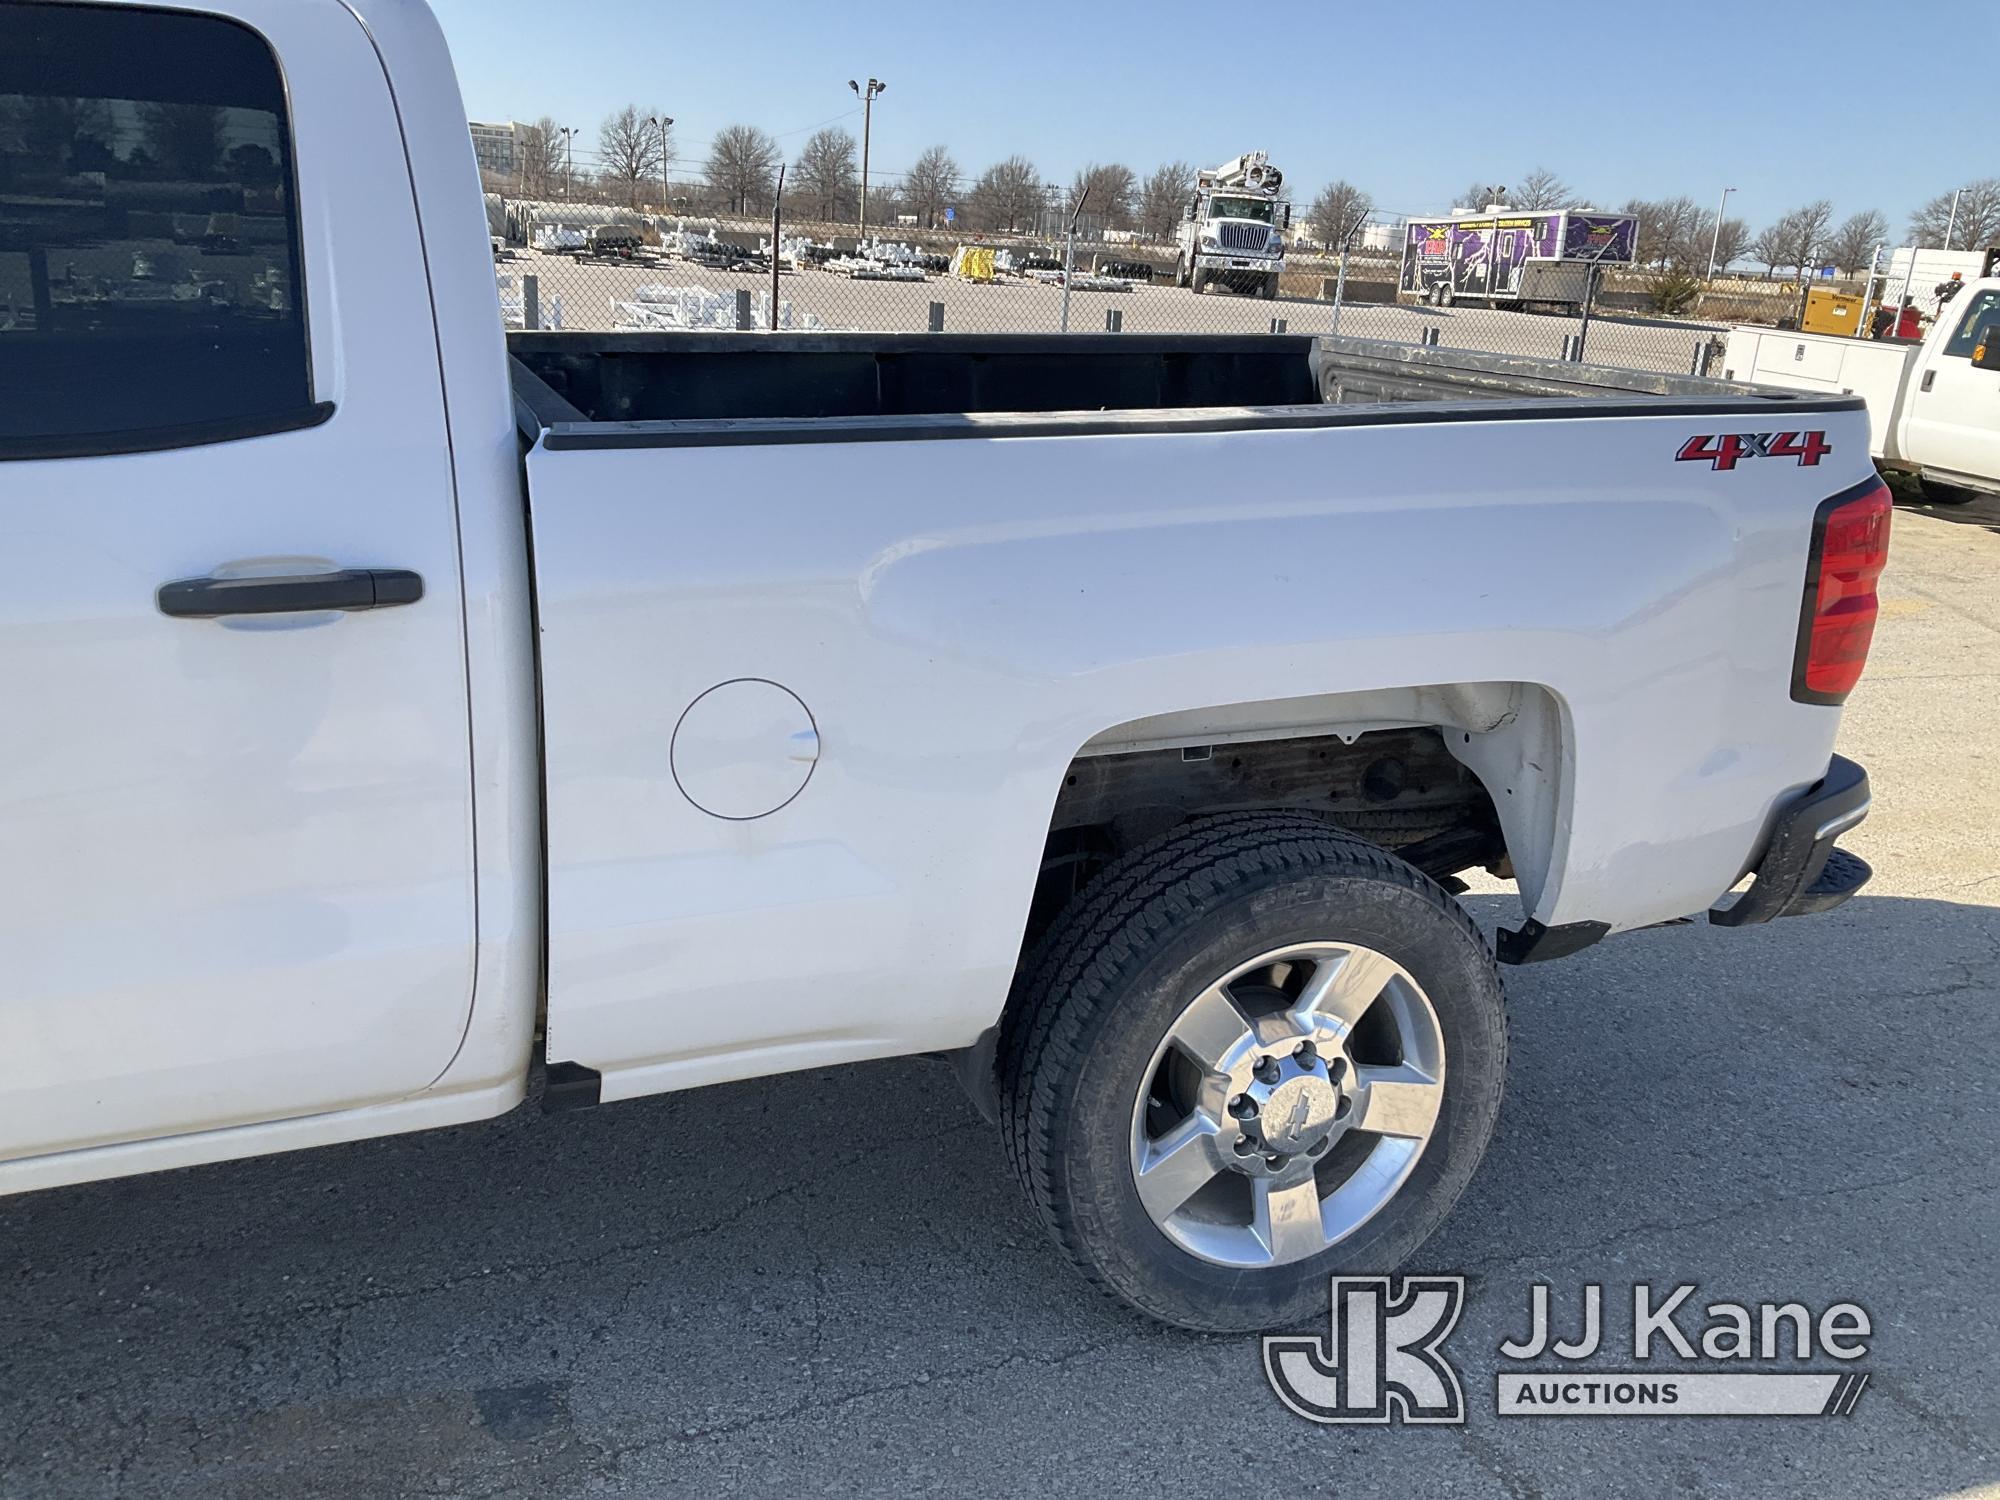 (Kansas City, MO) 2018 Chevrolet Silverado 2500HD 4x4 Crew-Cab Pickup Truck Runs & Moves) (Has A Den